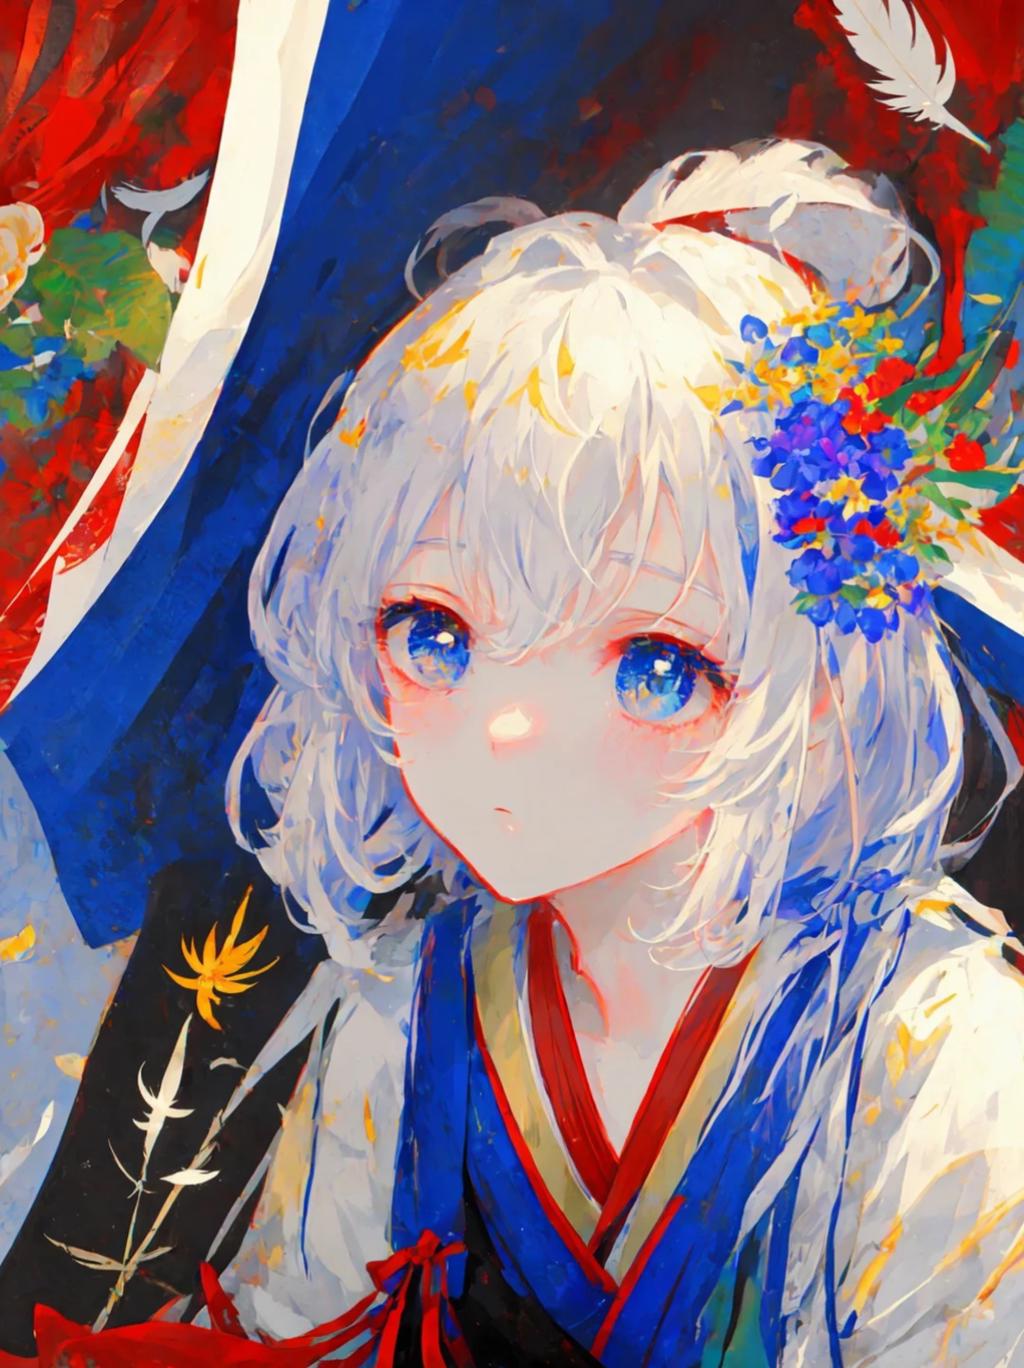 ai绘画横屏壁纸系列 关键词:白头发蓝眼睛的动漫女孩,头发上有一朵花